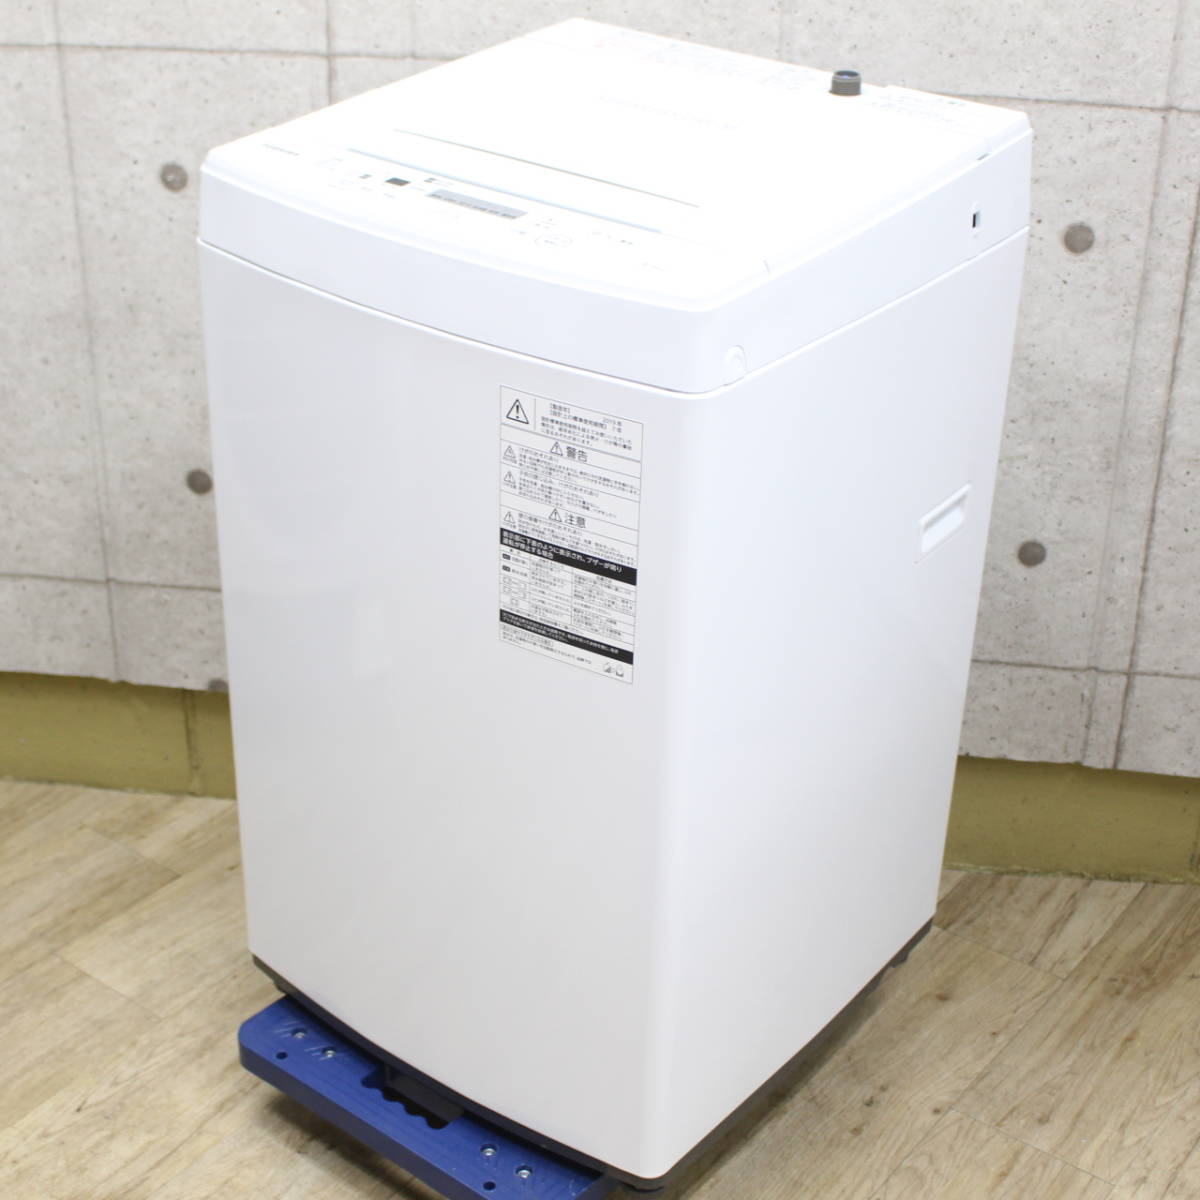 東芝 全自動洗濯機 AW-45M7 2019年製 - 川崎市・横浜市で家具・家電の